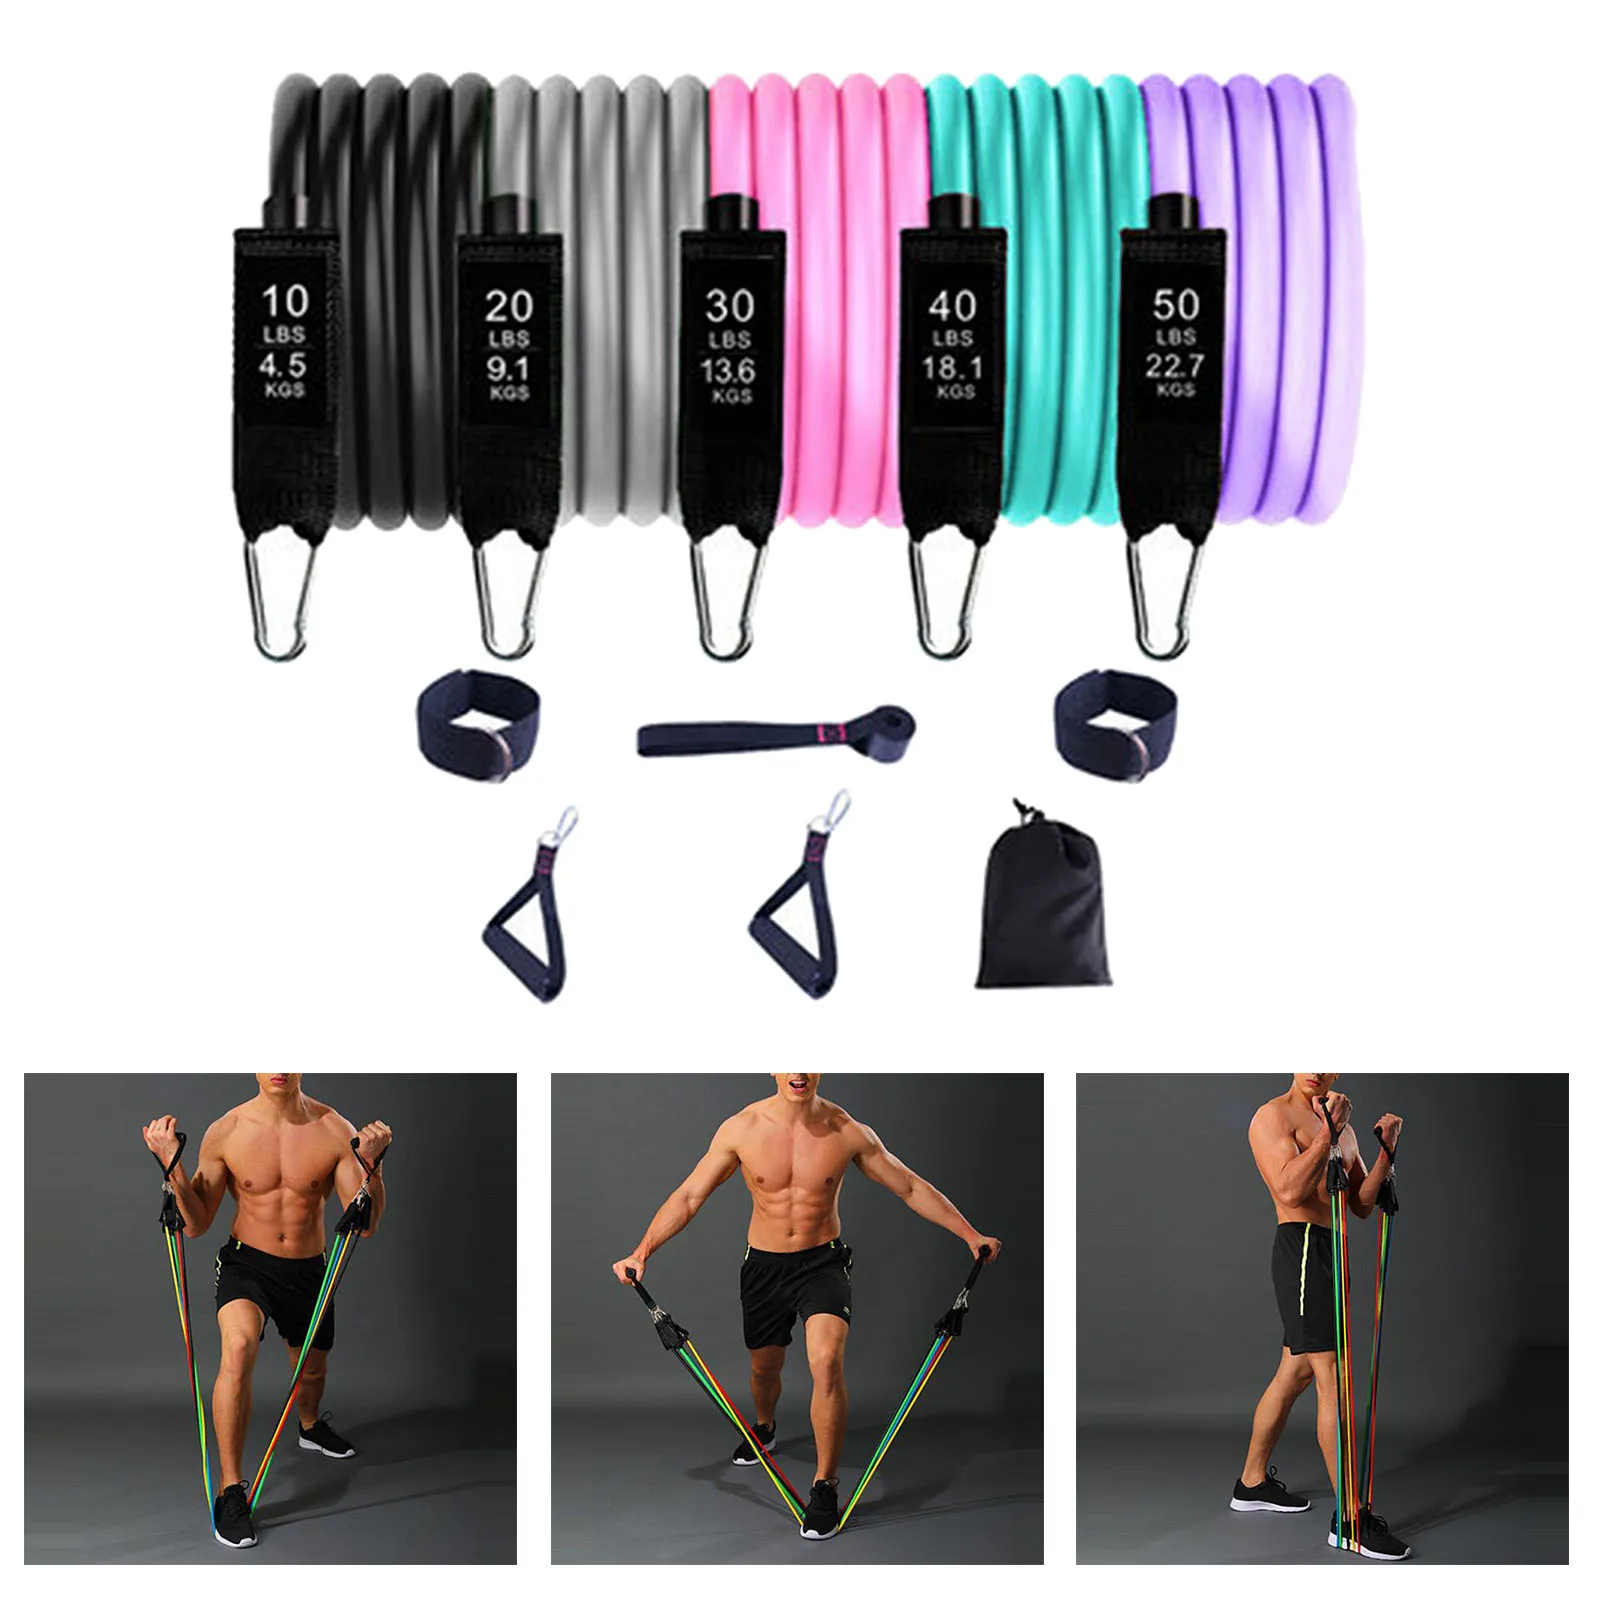 

Набор эластичных лент для упражнений, 5 цветов, ленты с дверными анкерными ручками, портативные ремни на лодыжку для тренировок мышц